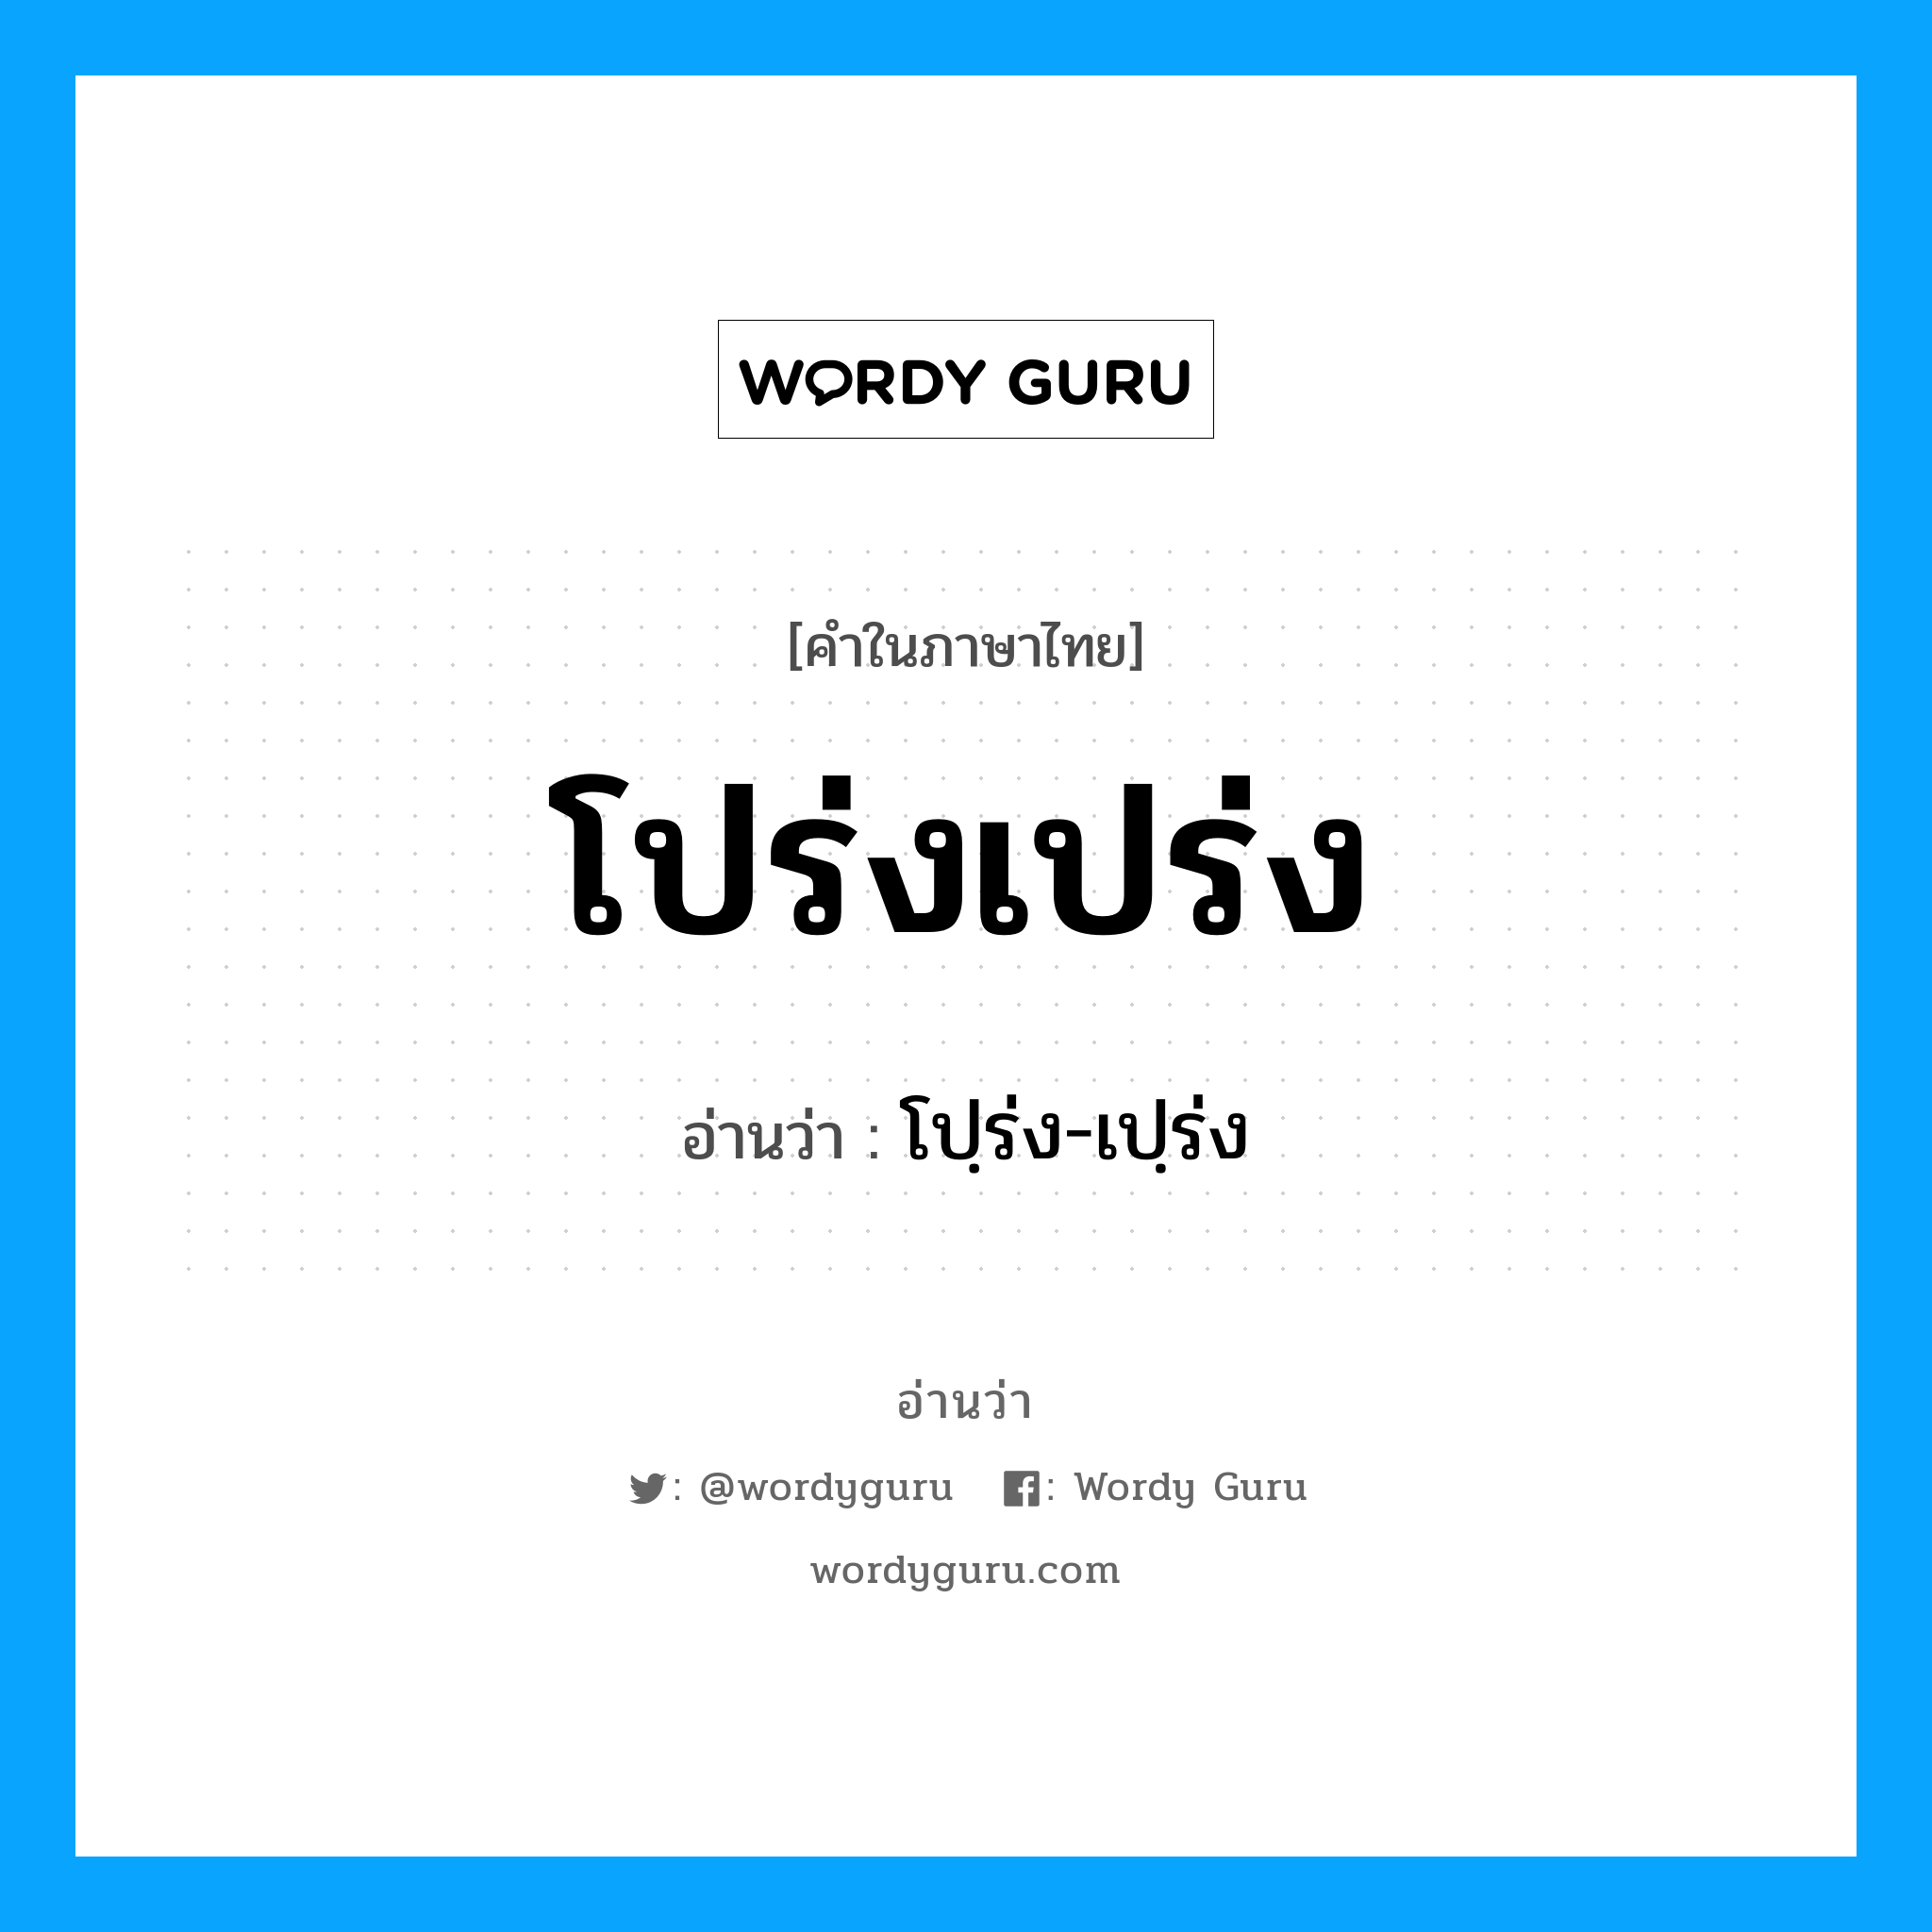 โปฺร่ง-เปฺร่ง เป็นคำอ่านของคำไหน?, คำในภาษาไทย โปฺร่ง-เปฺร่ง อ่านว่า โปร่งเปร่ง